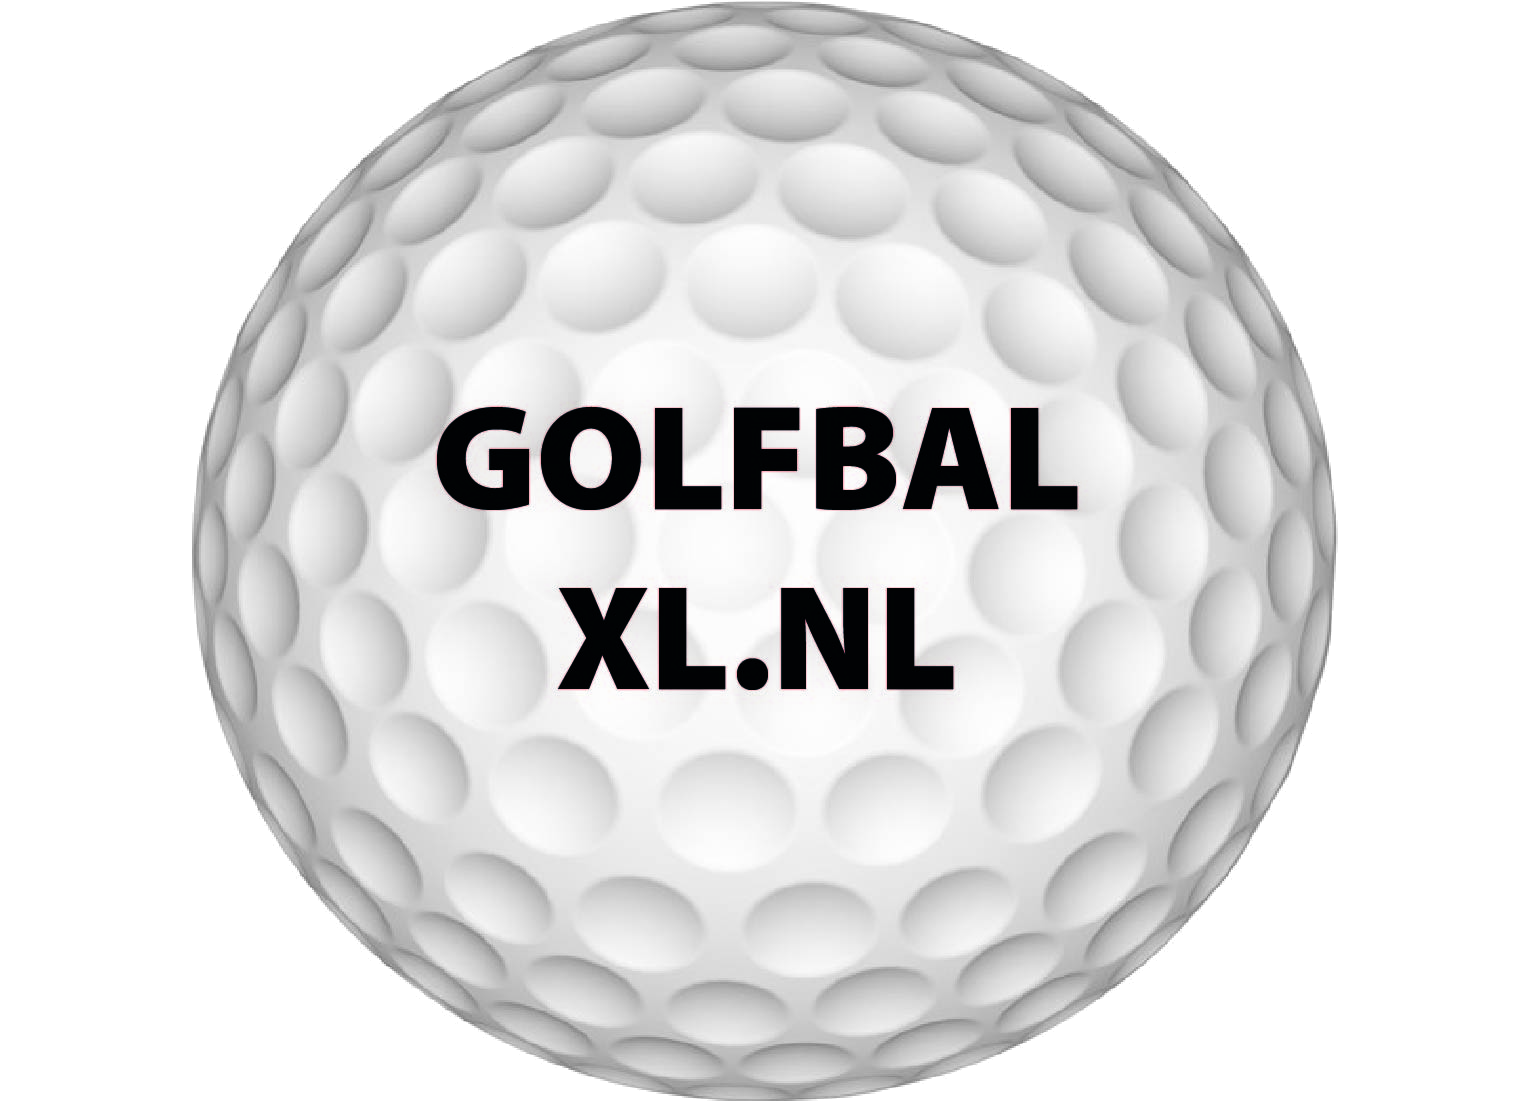 voldoende Hulpeloosheid Vaardigheid Callaway golfbal laten bedrukken? Zo klaar bij Golfbalxl.nl!